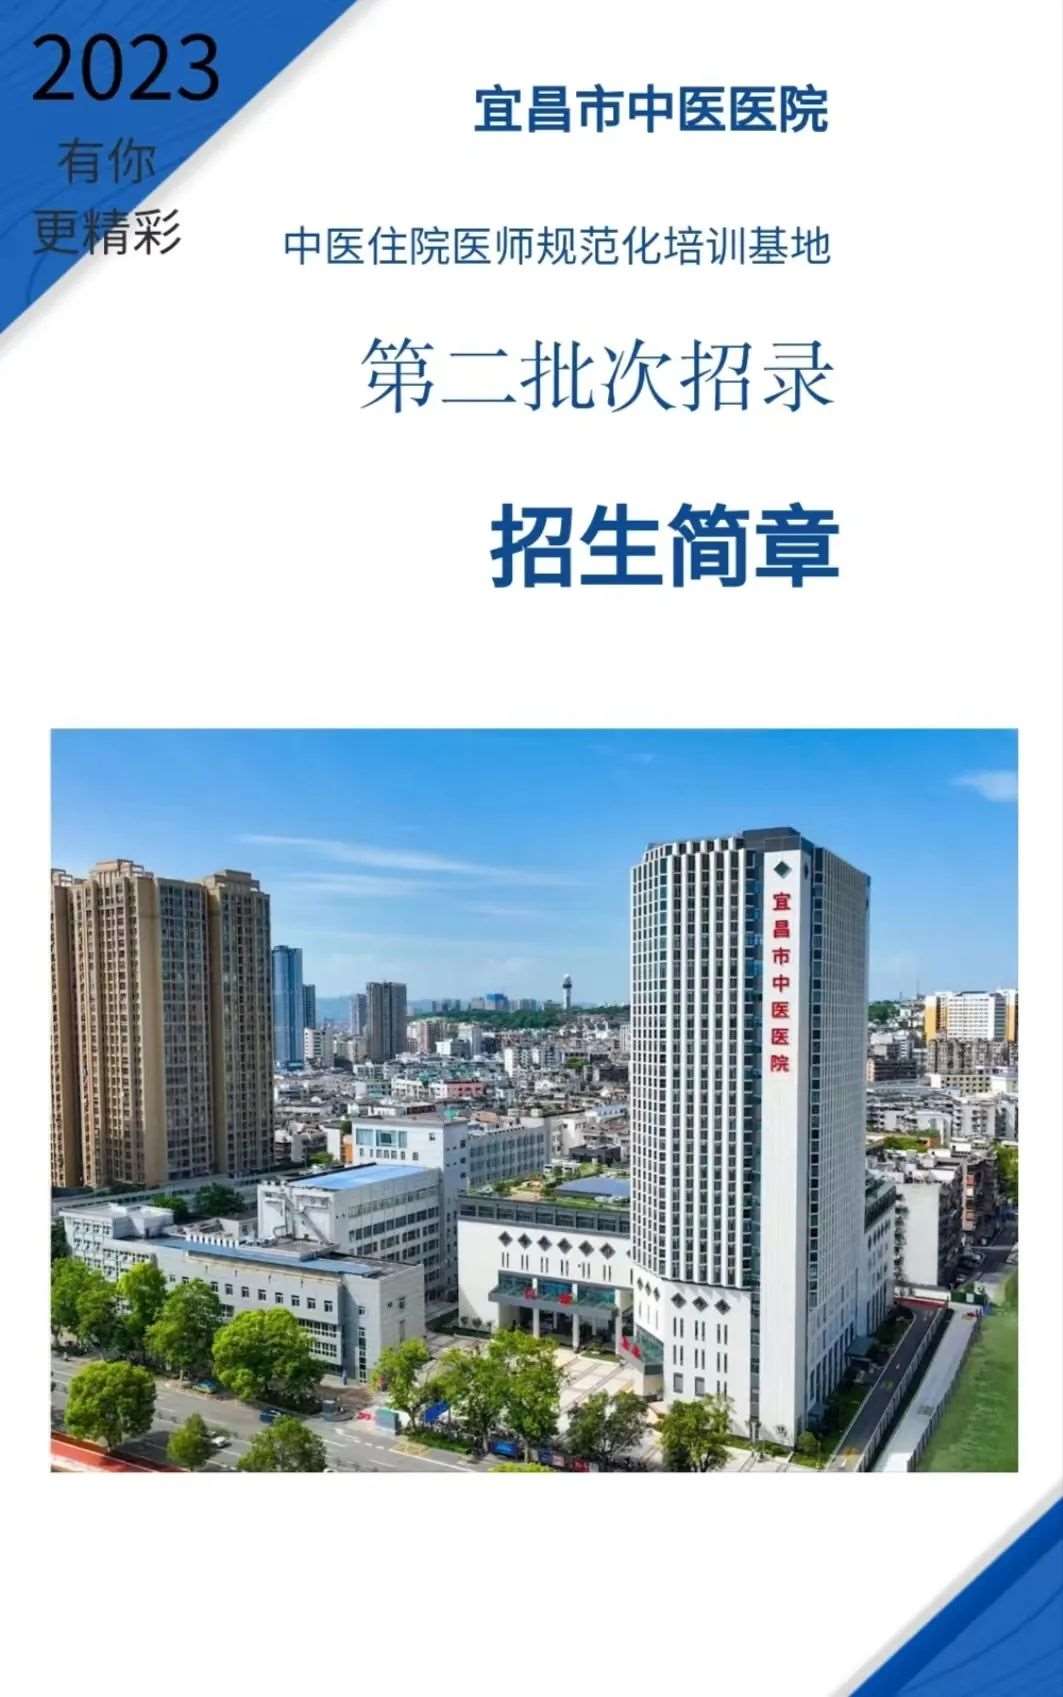 宜昌市中医医院2023年住院医师规范化培训招生简章第二批